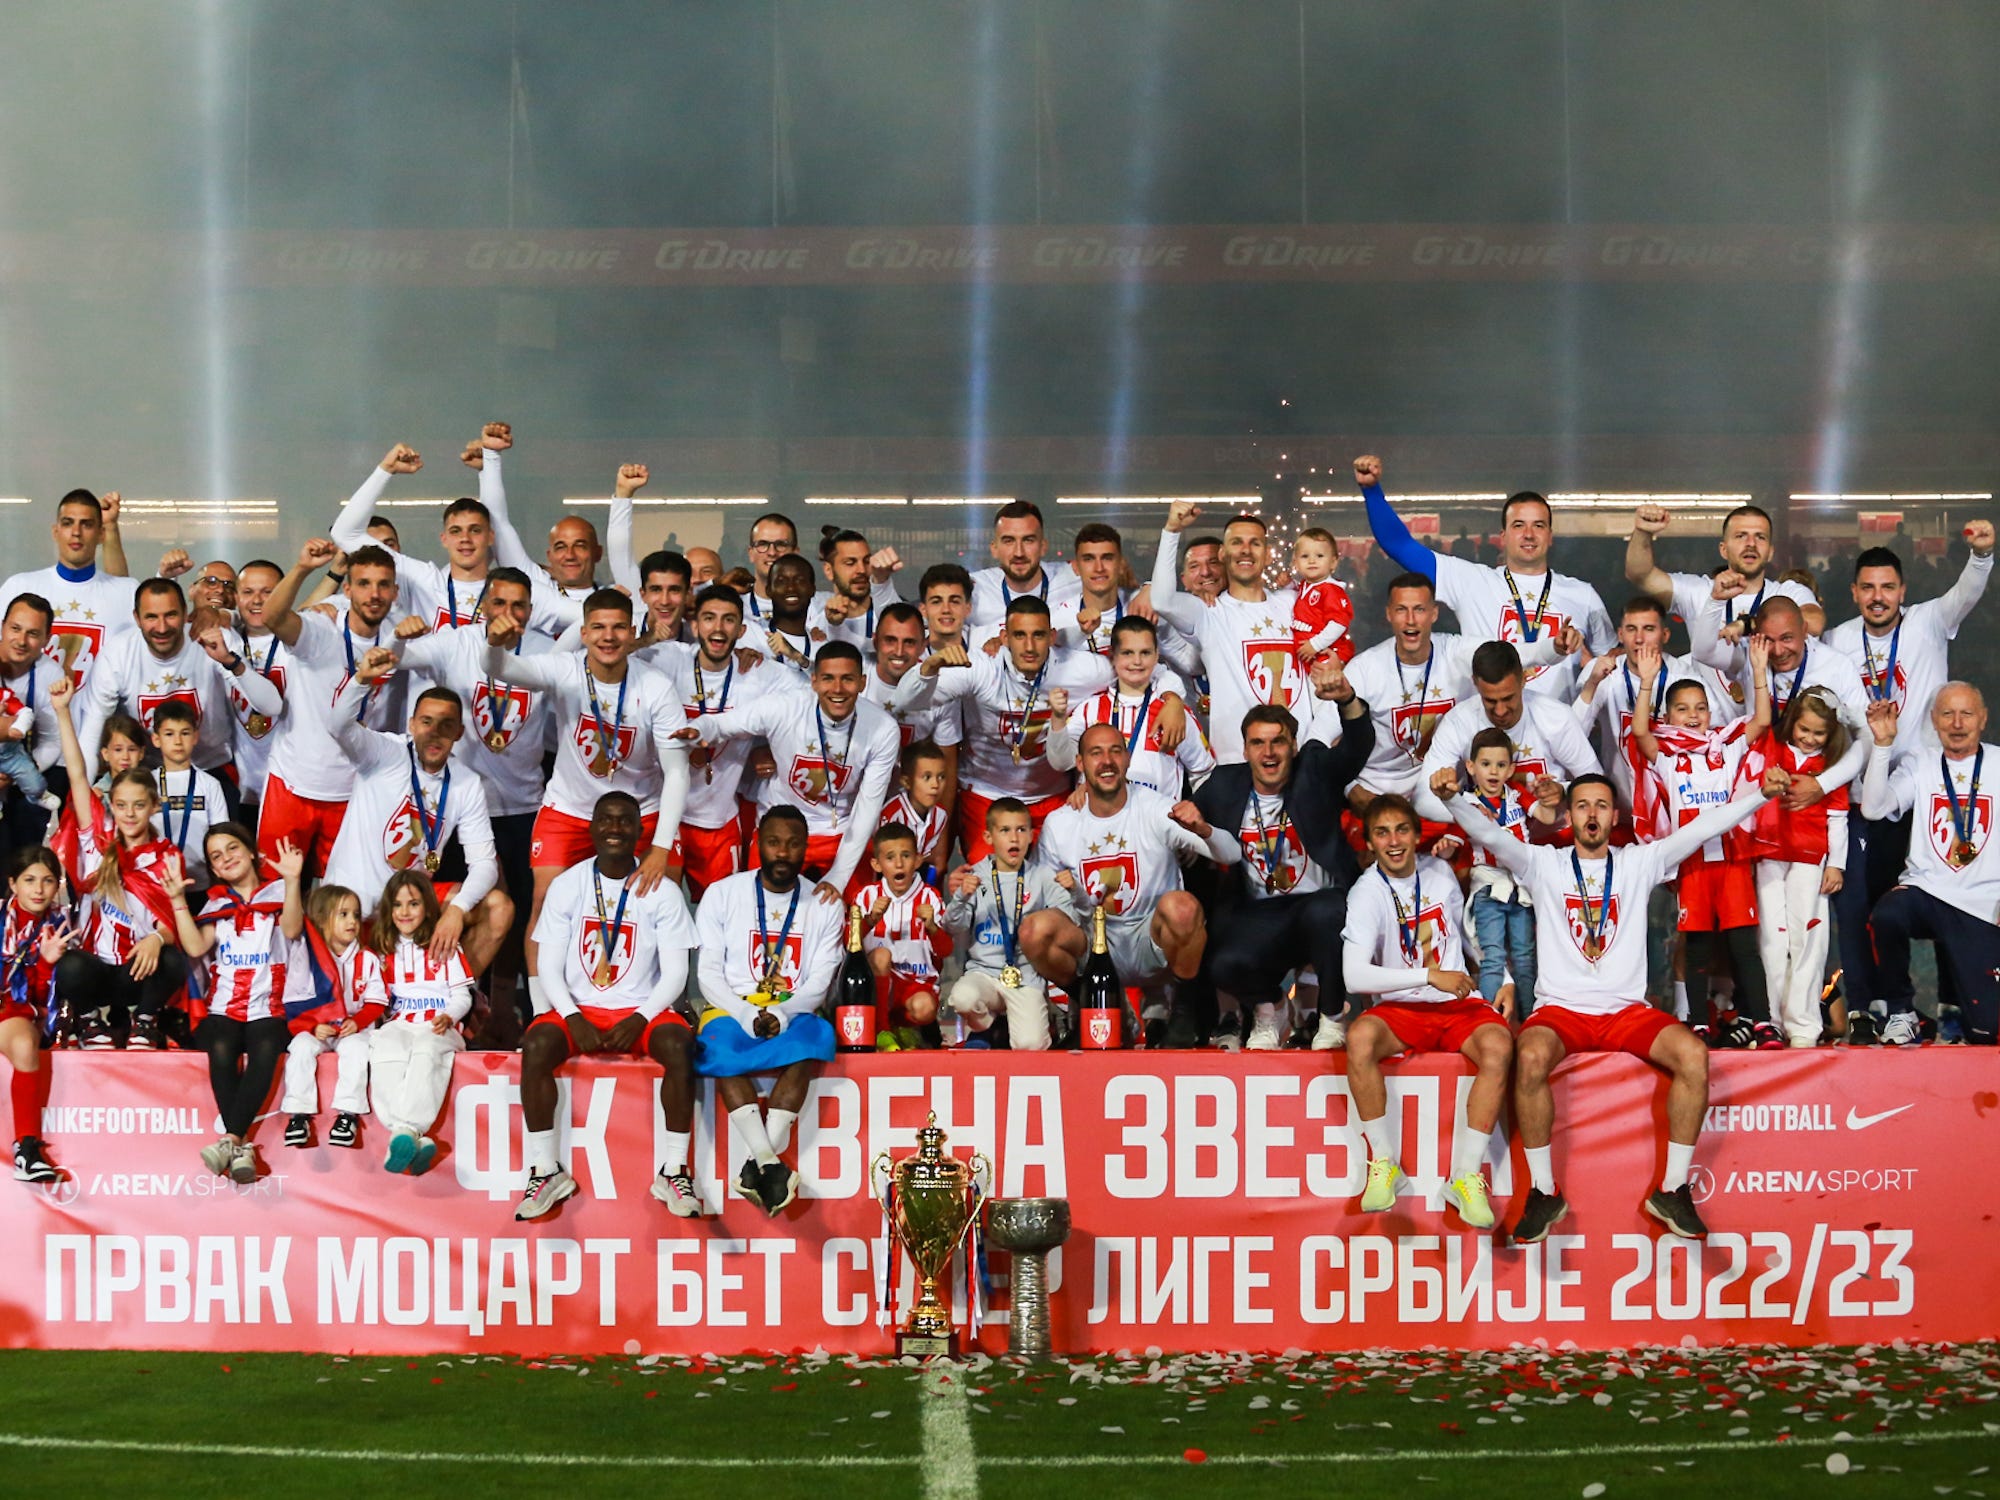 Campeonato Sérvio: Tabela, Estatísticas e Resultados - Sérvia